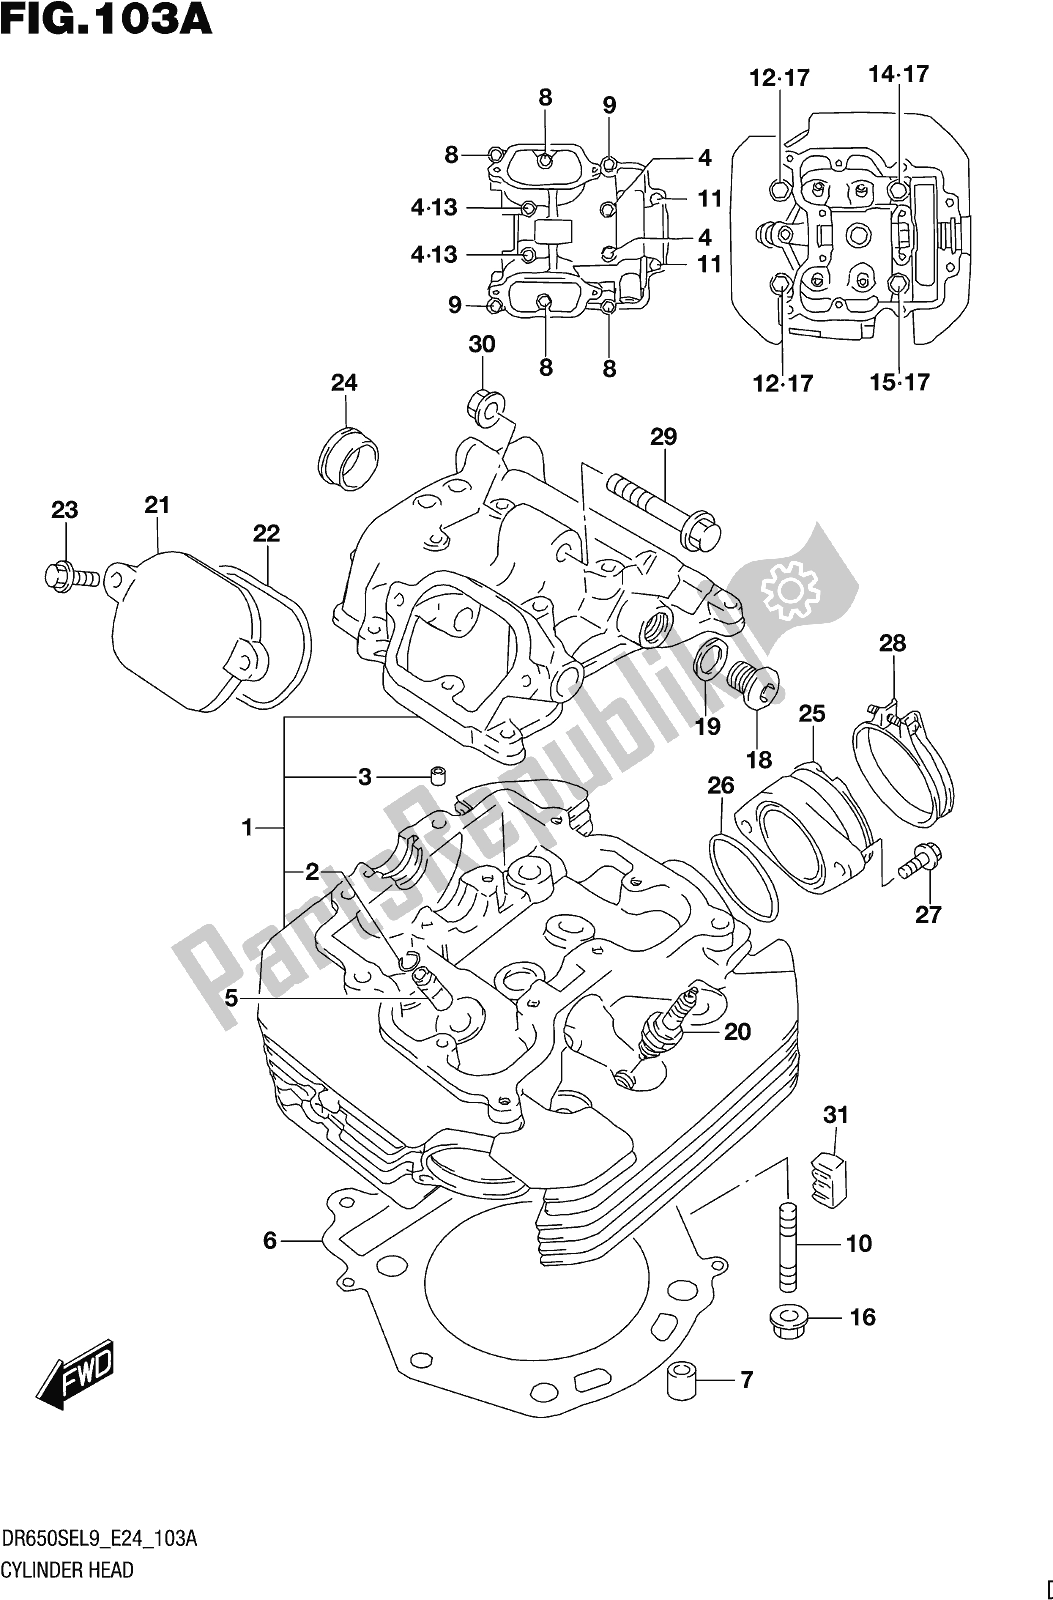 Toutes les pièces pour le Fig. 103a Cylinder Head du Suzuki DR 650 SE 2019